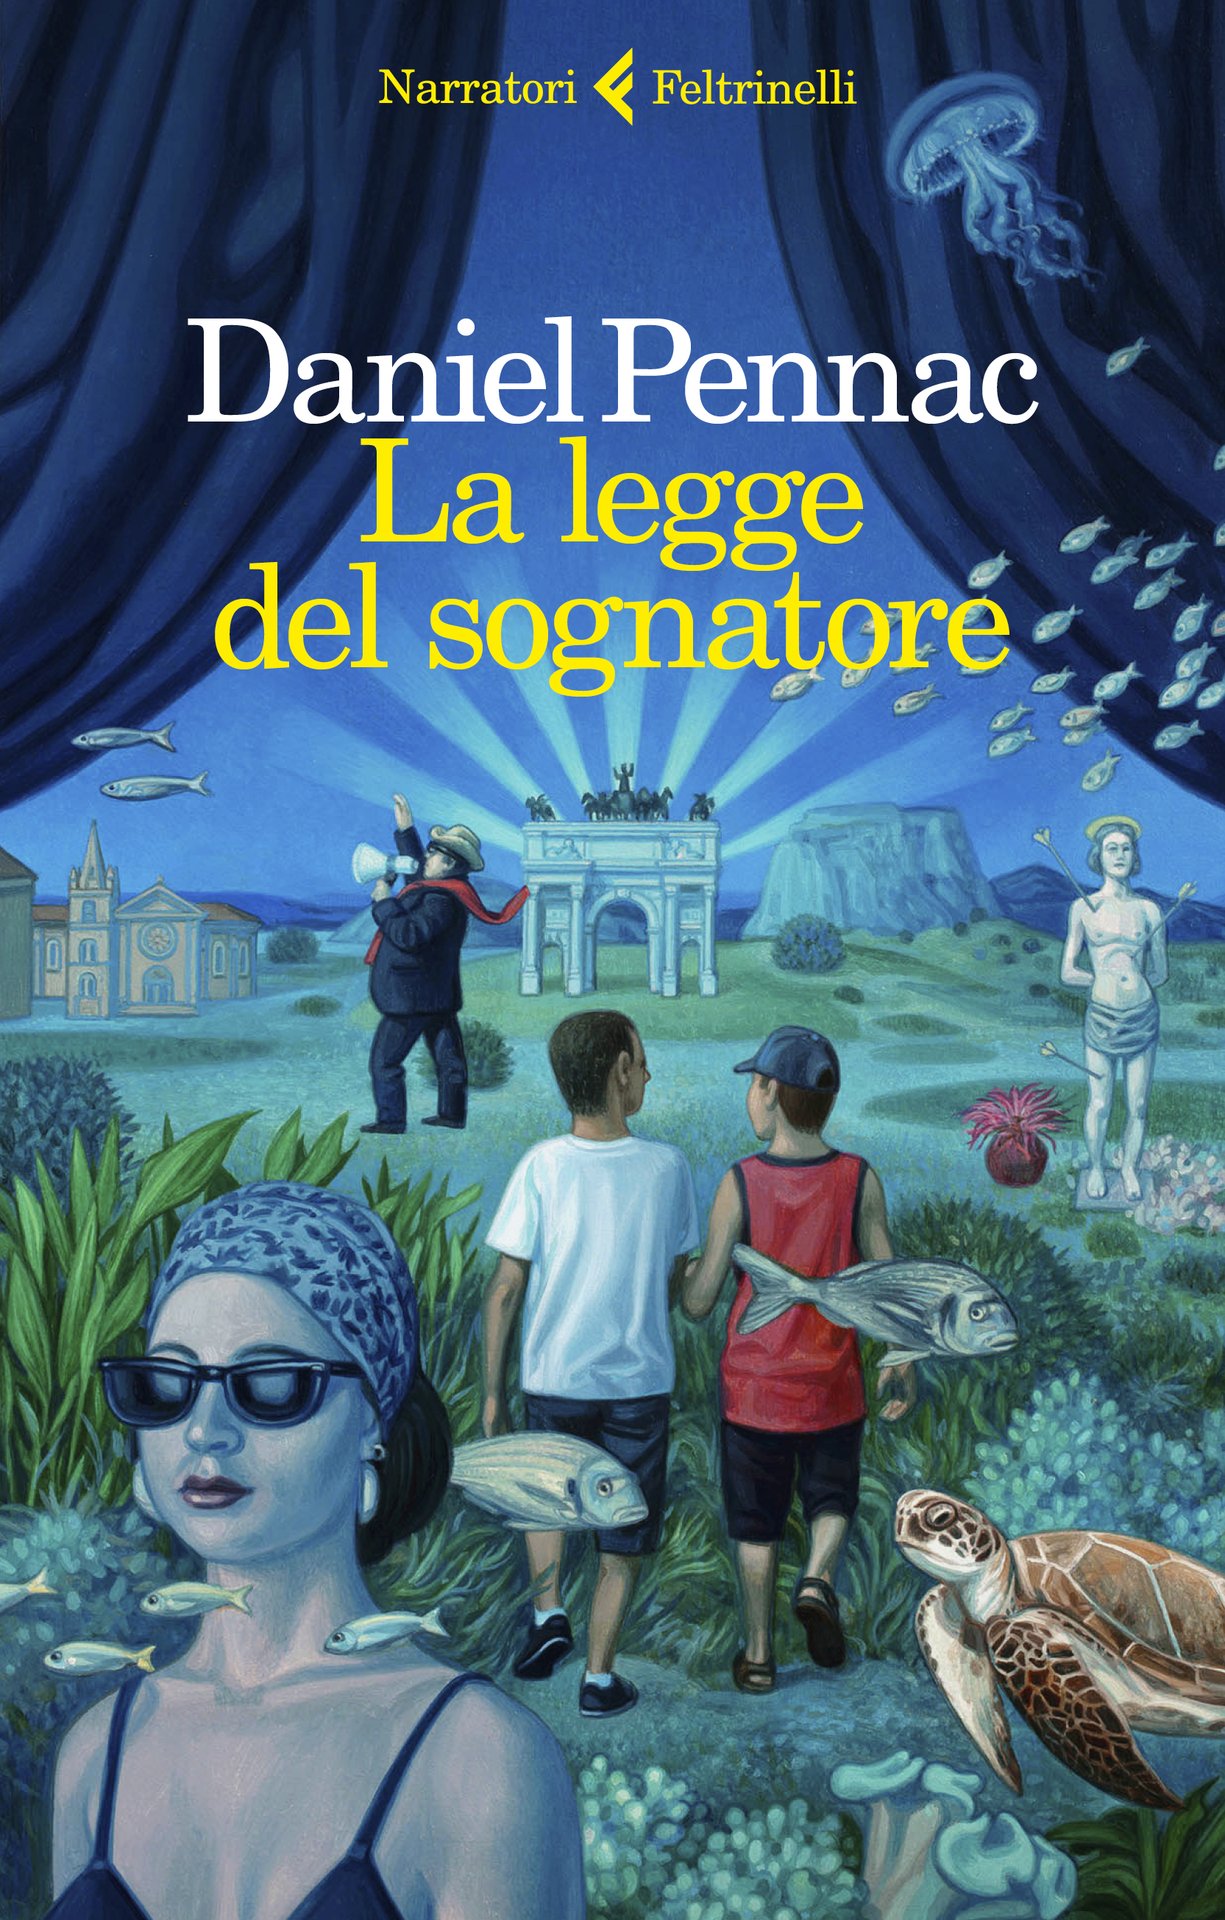 Daniel Pennac a Milano, Torino, Rimini e Bologna: "La legge del sognatore". 